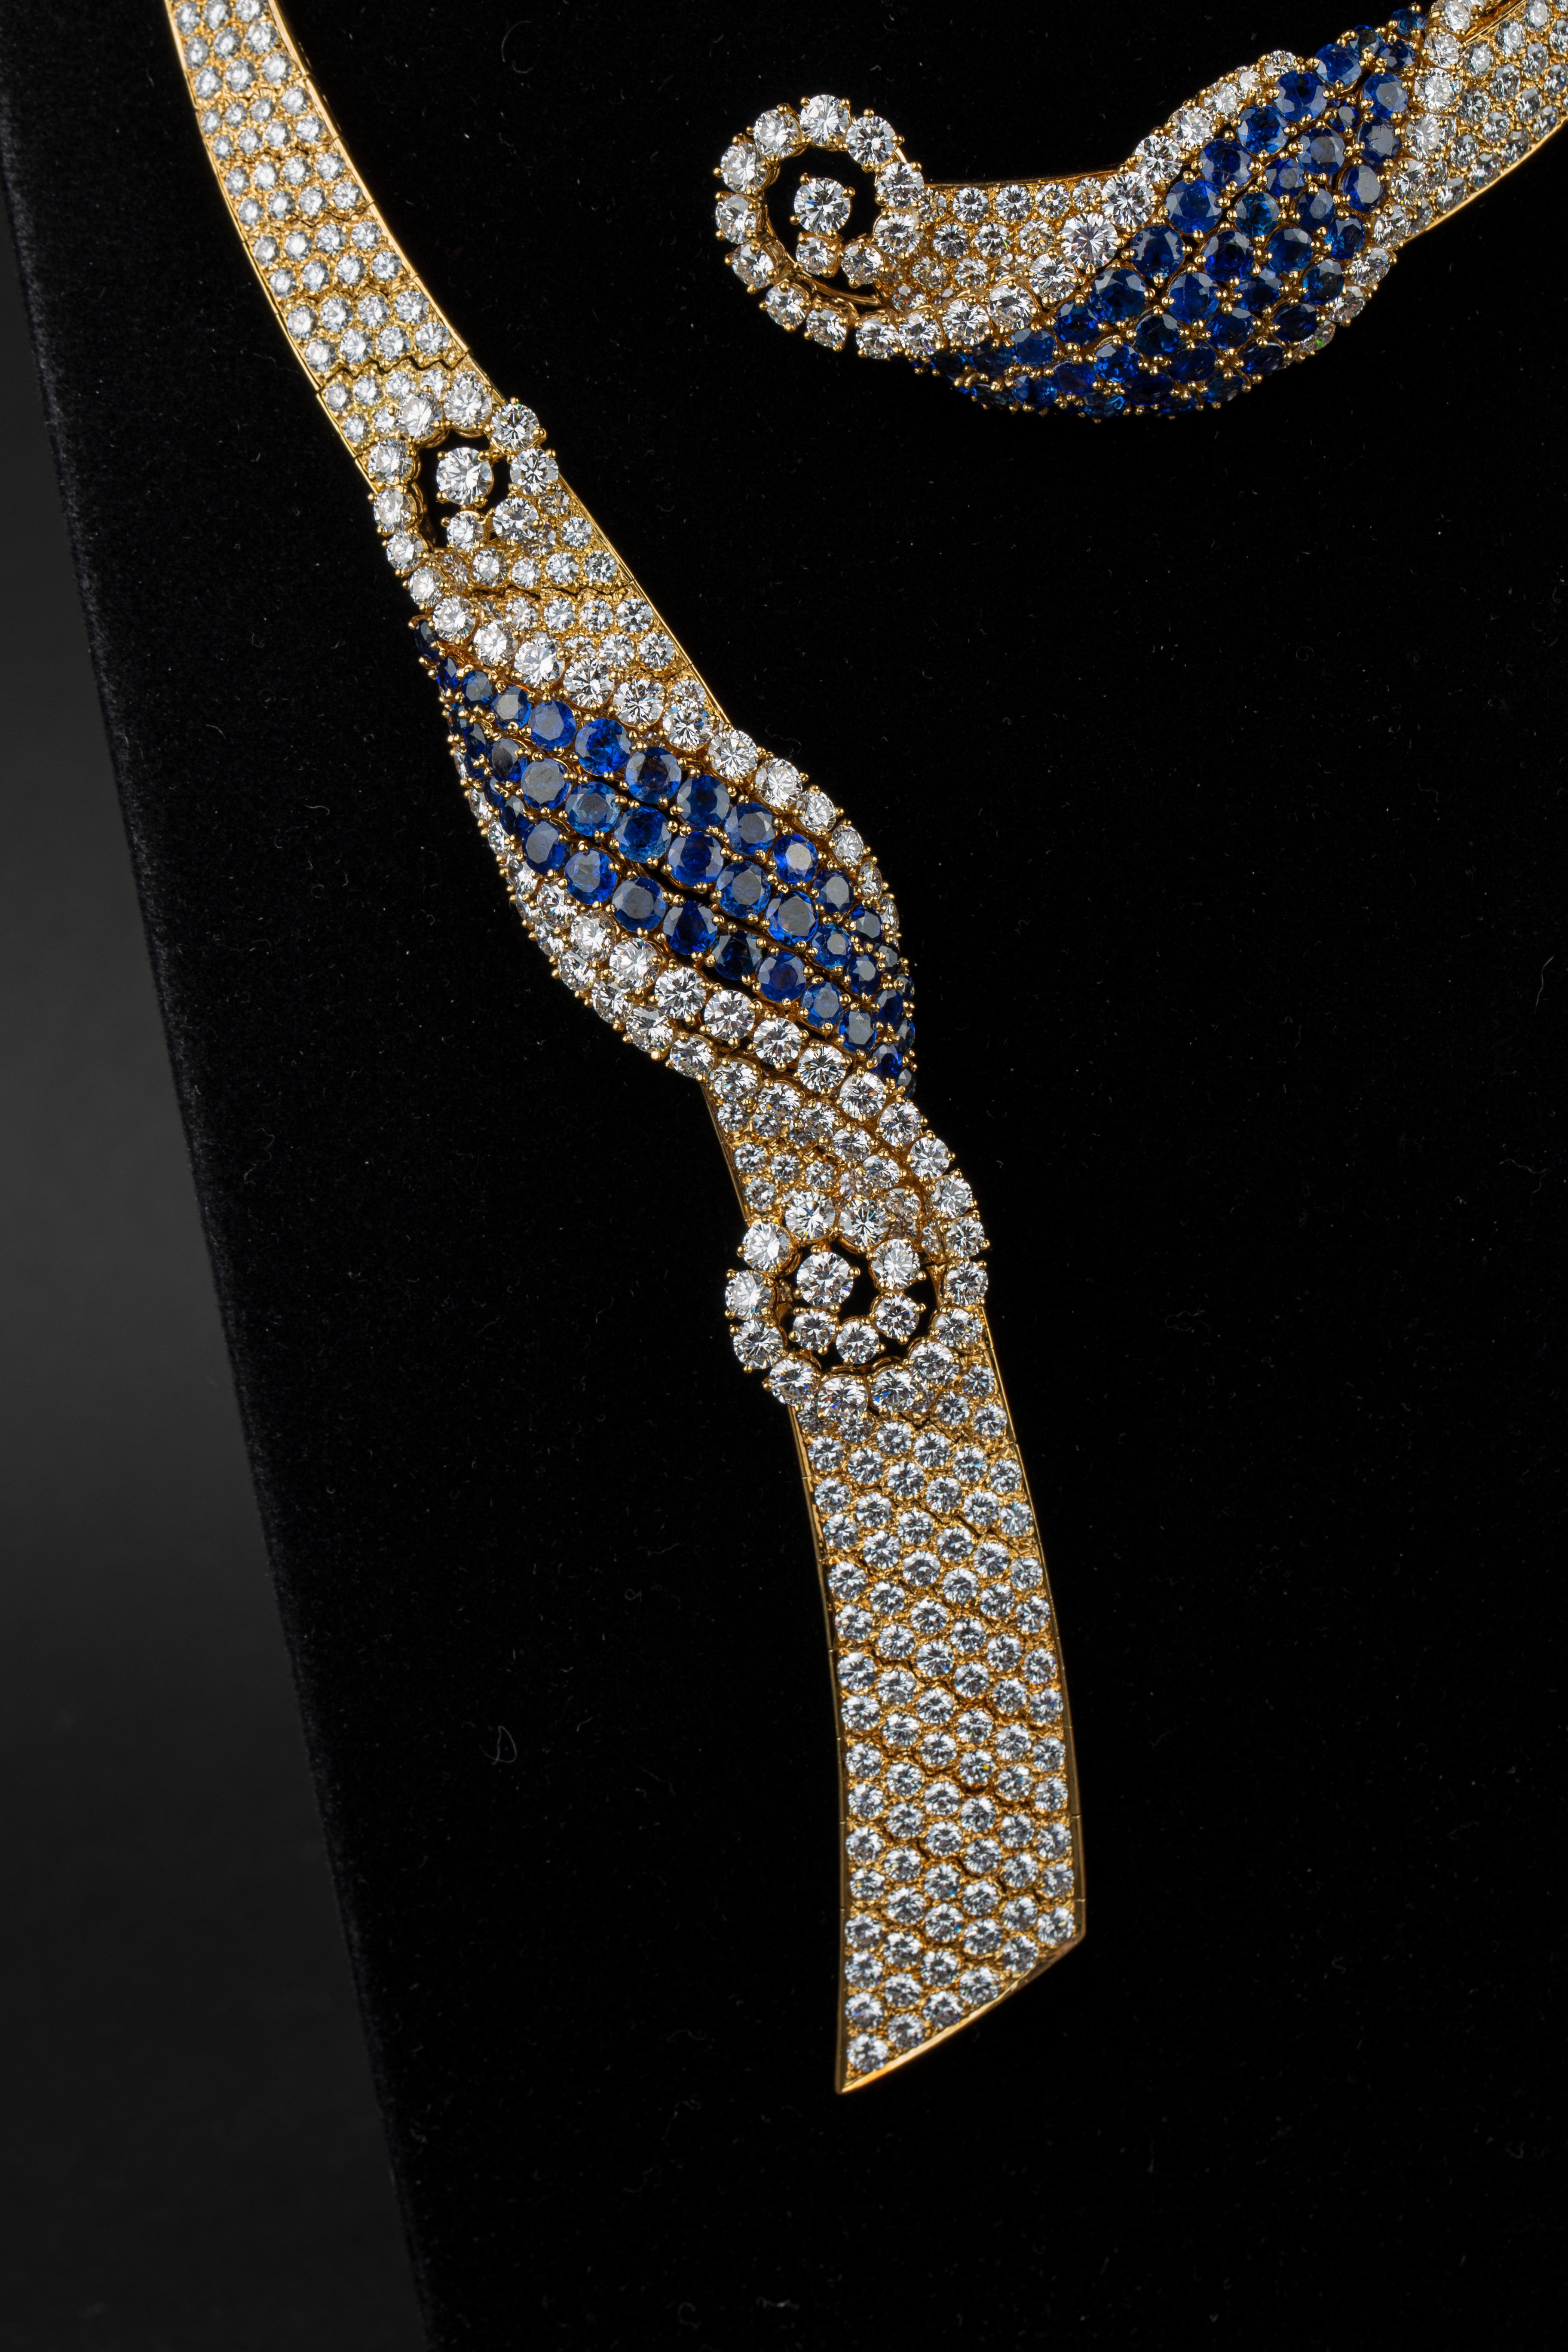 M.Gerard Diamant- und Saphir-Halskette und Ohrringe in 18K Gelbgold. Hergestellt in den 1970er Jahren in Paris vom angesehenen Juwelier André Vassort.

Auch ein passendes Armband ist erhältlich. 

102 Karat Diamanten feinster Qualität, Farbe E/F -